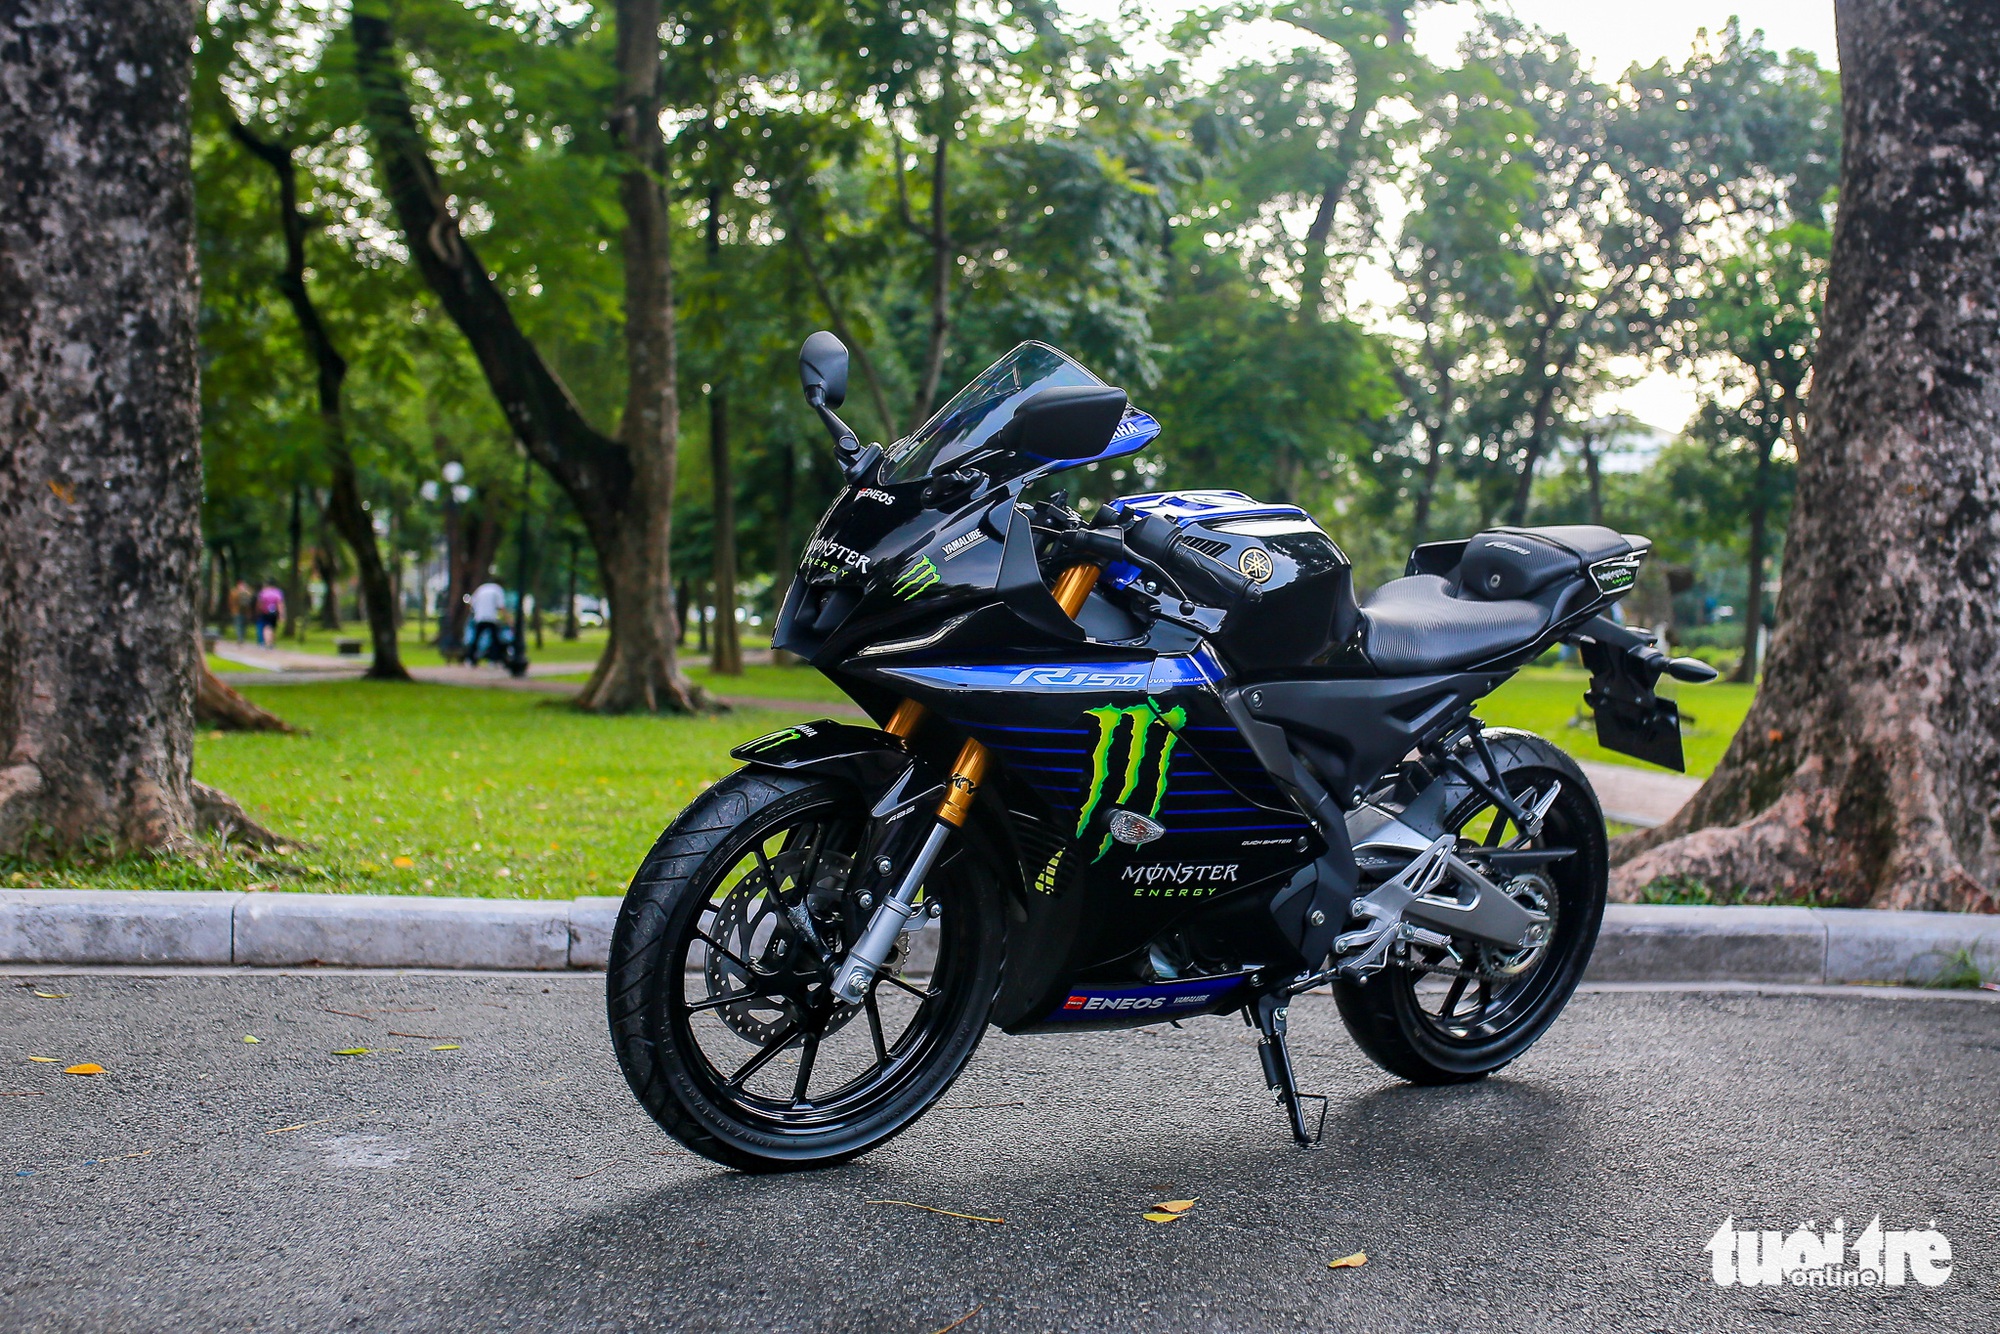 3 sportbike 150 phân khối đang bán tại Việt Nam: Mô tô cỡ nhỏ cho người nhập môn - ảnh 1